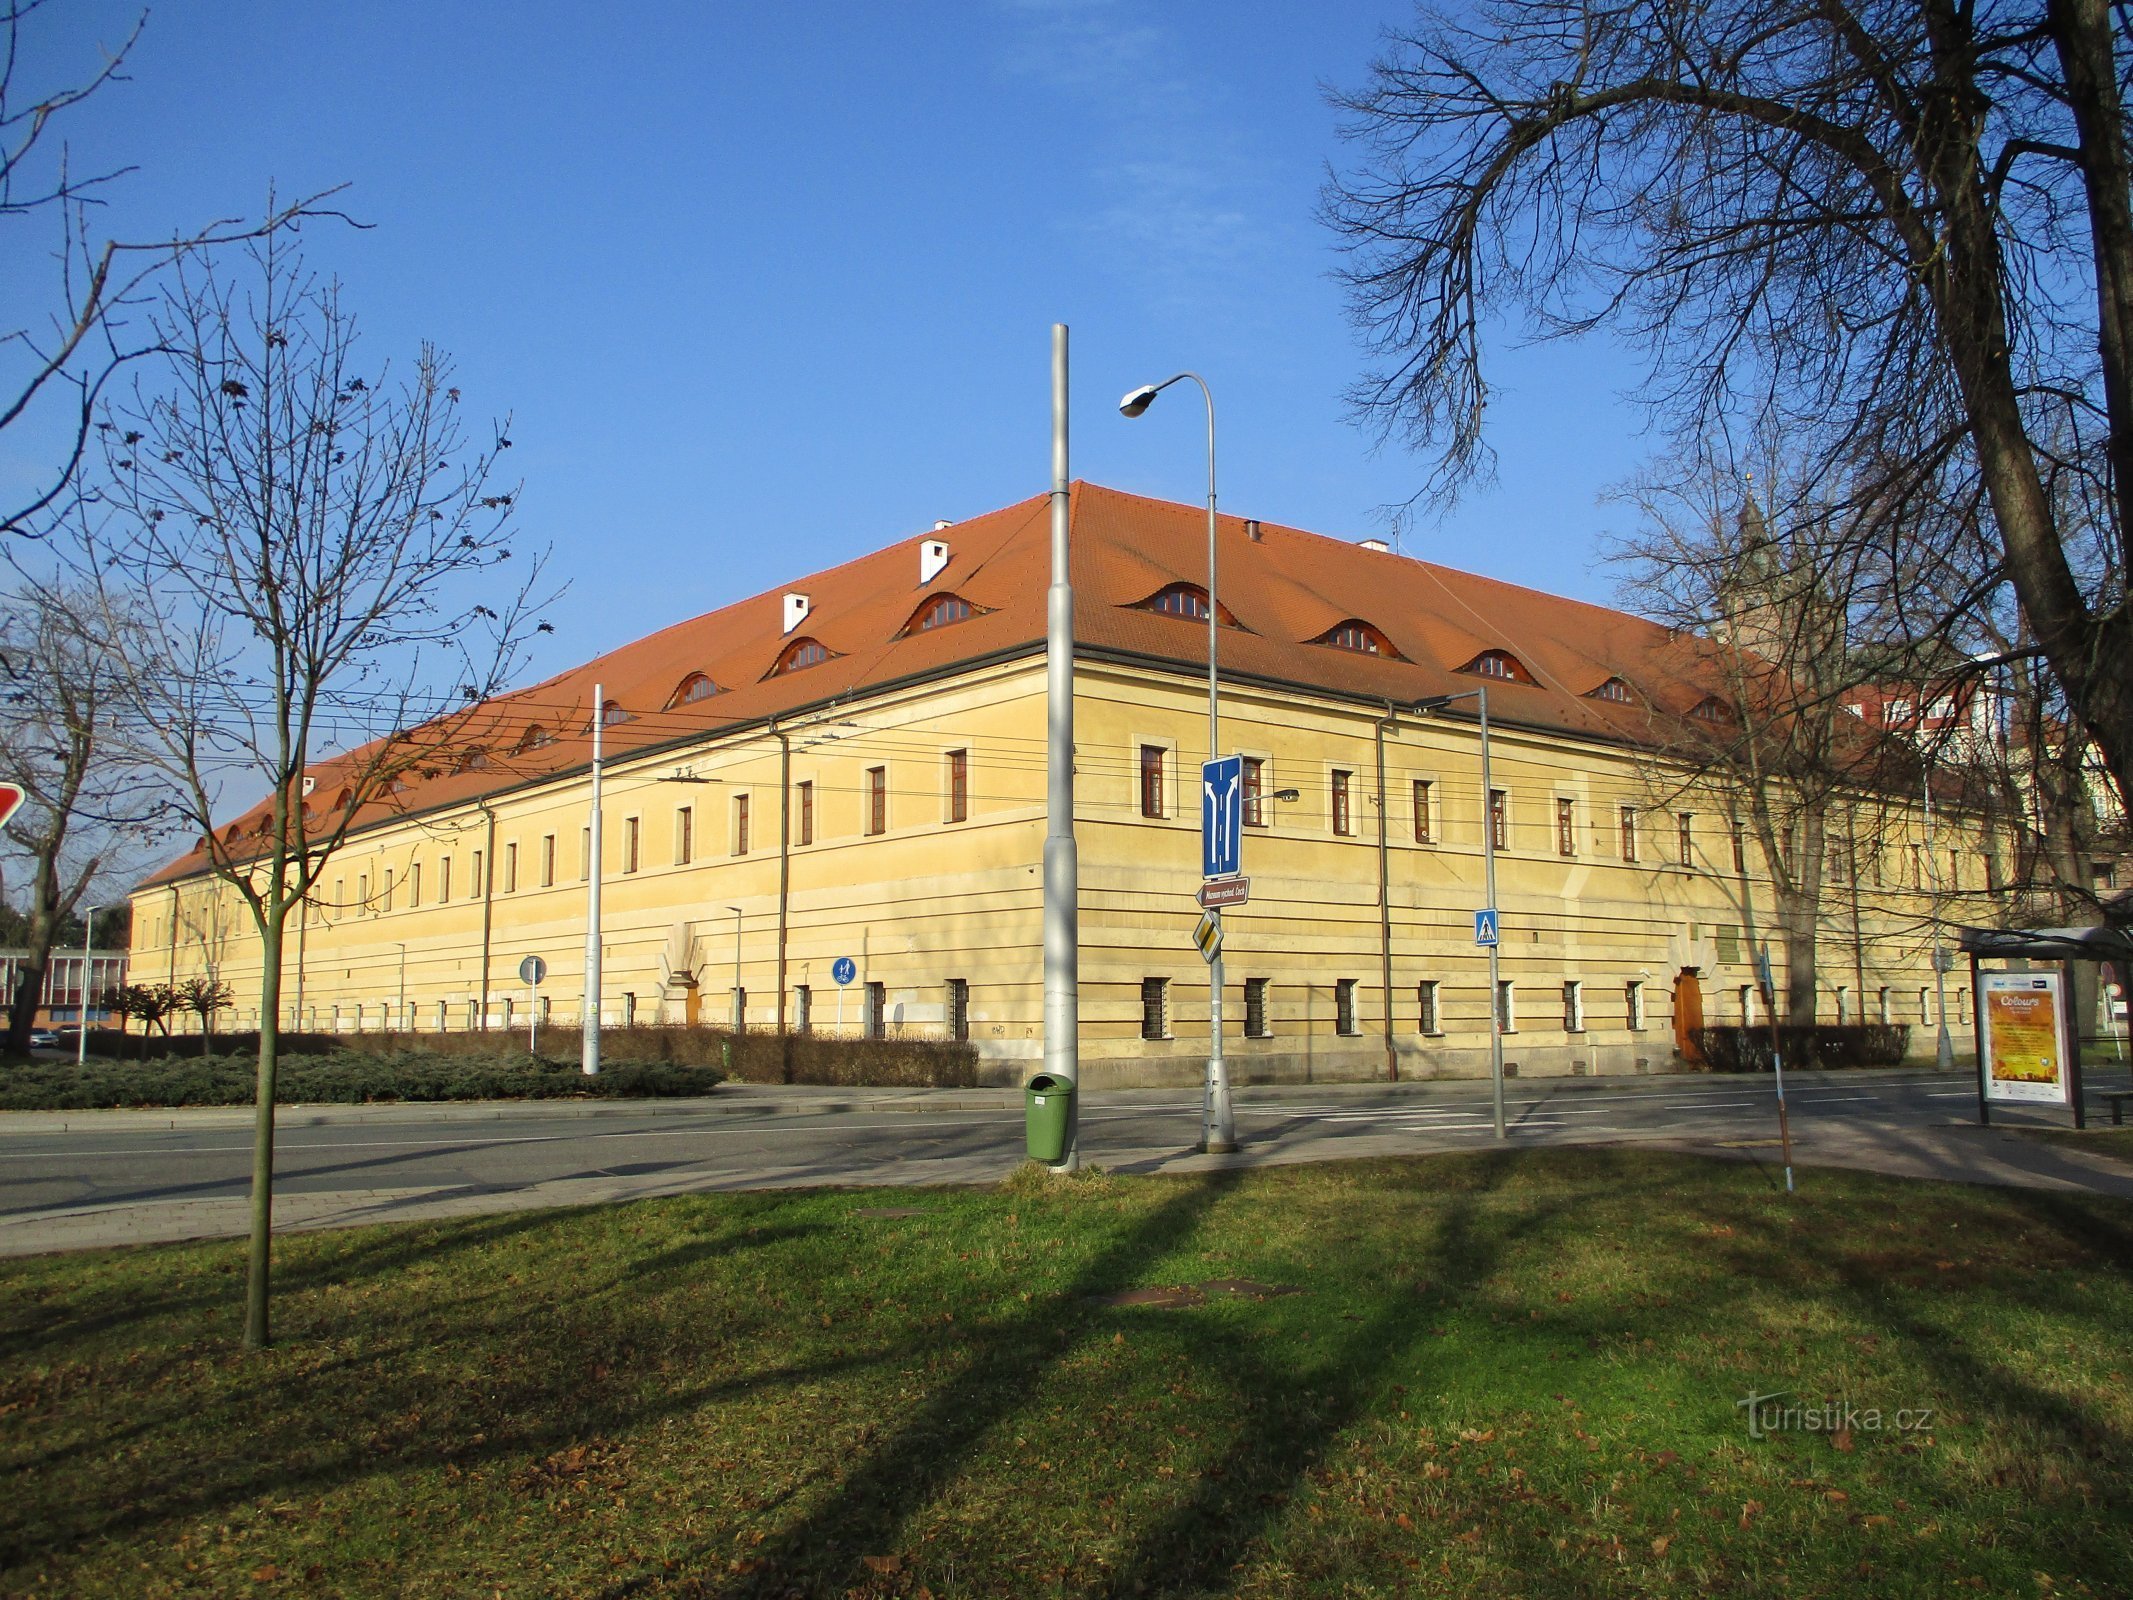 Antiguo cuartel de caballería (Hradec Králové, 9.2.2020 de febrero de XNUMX)